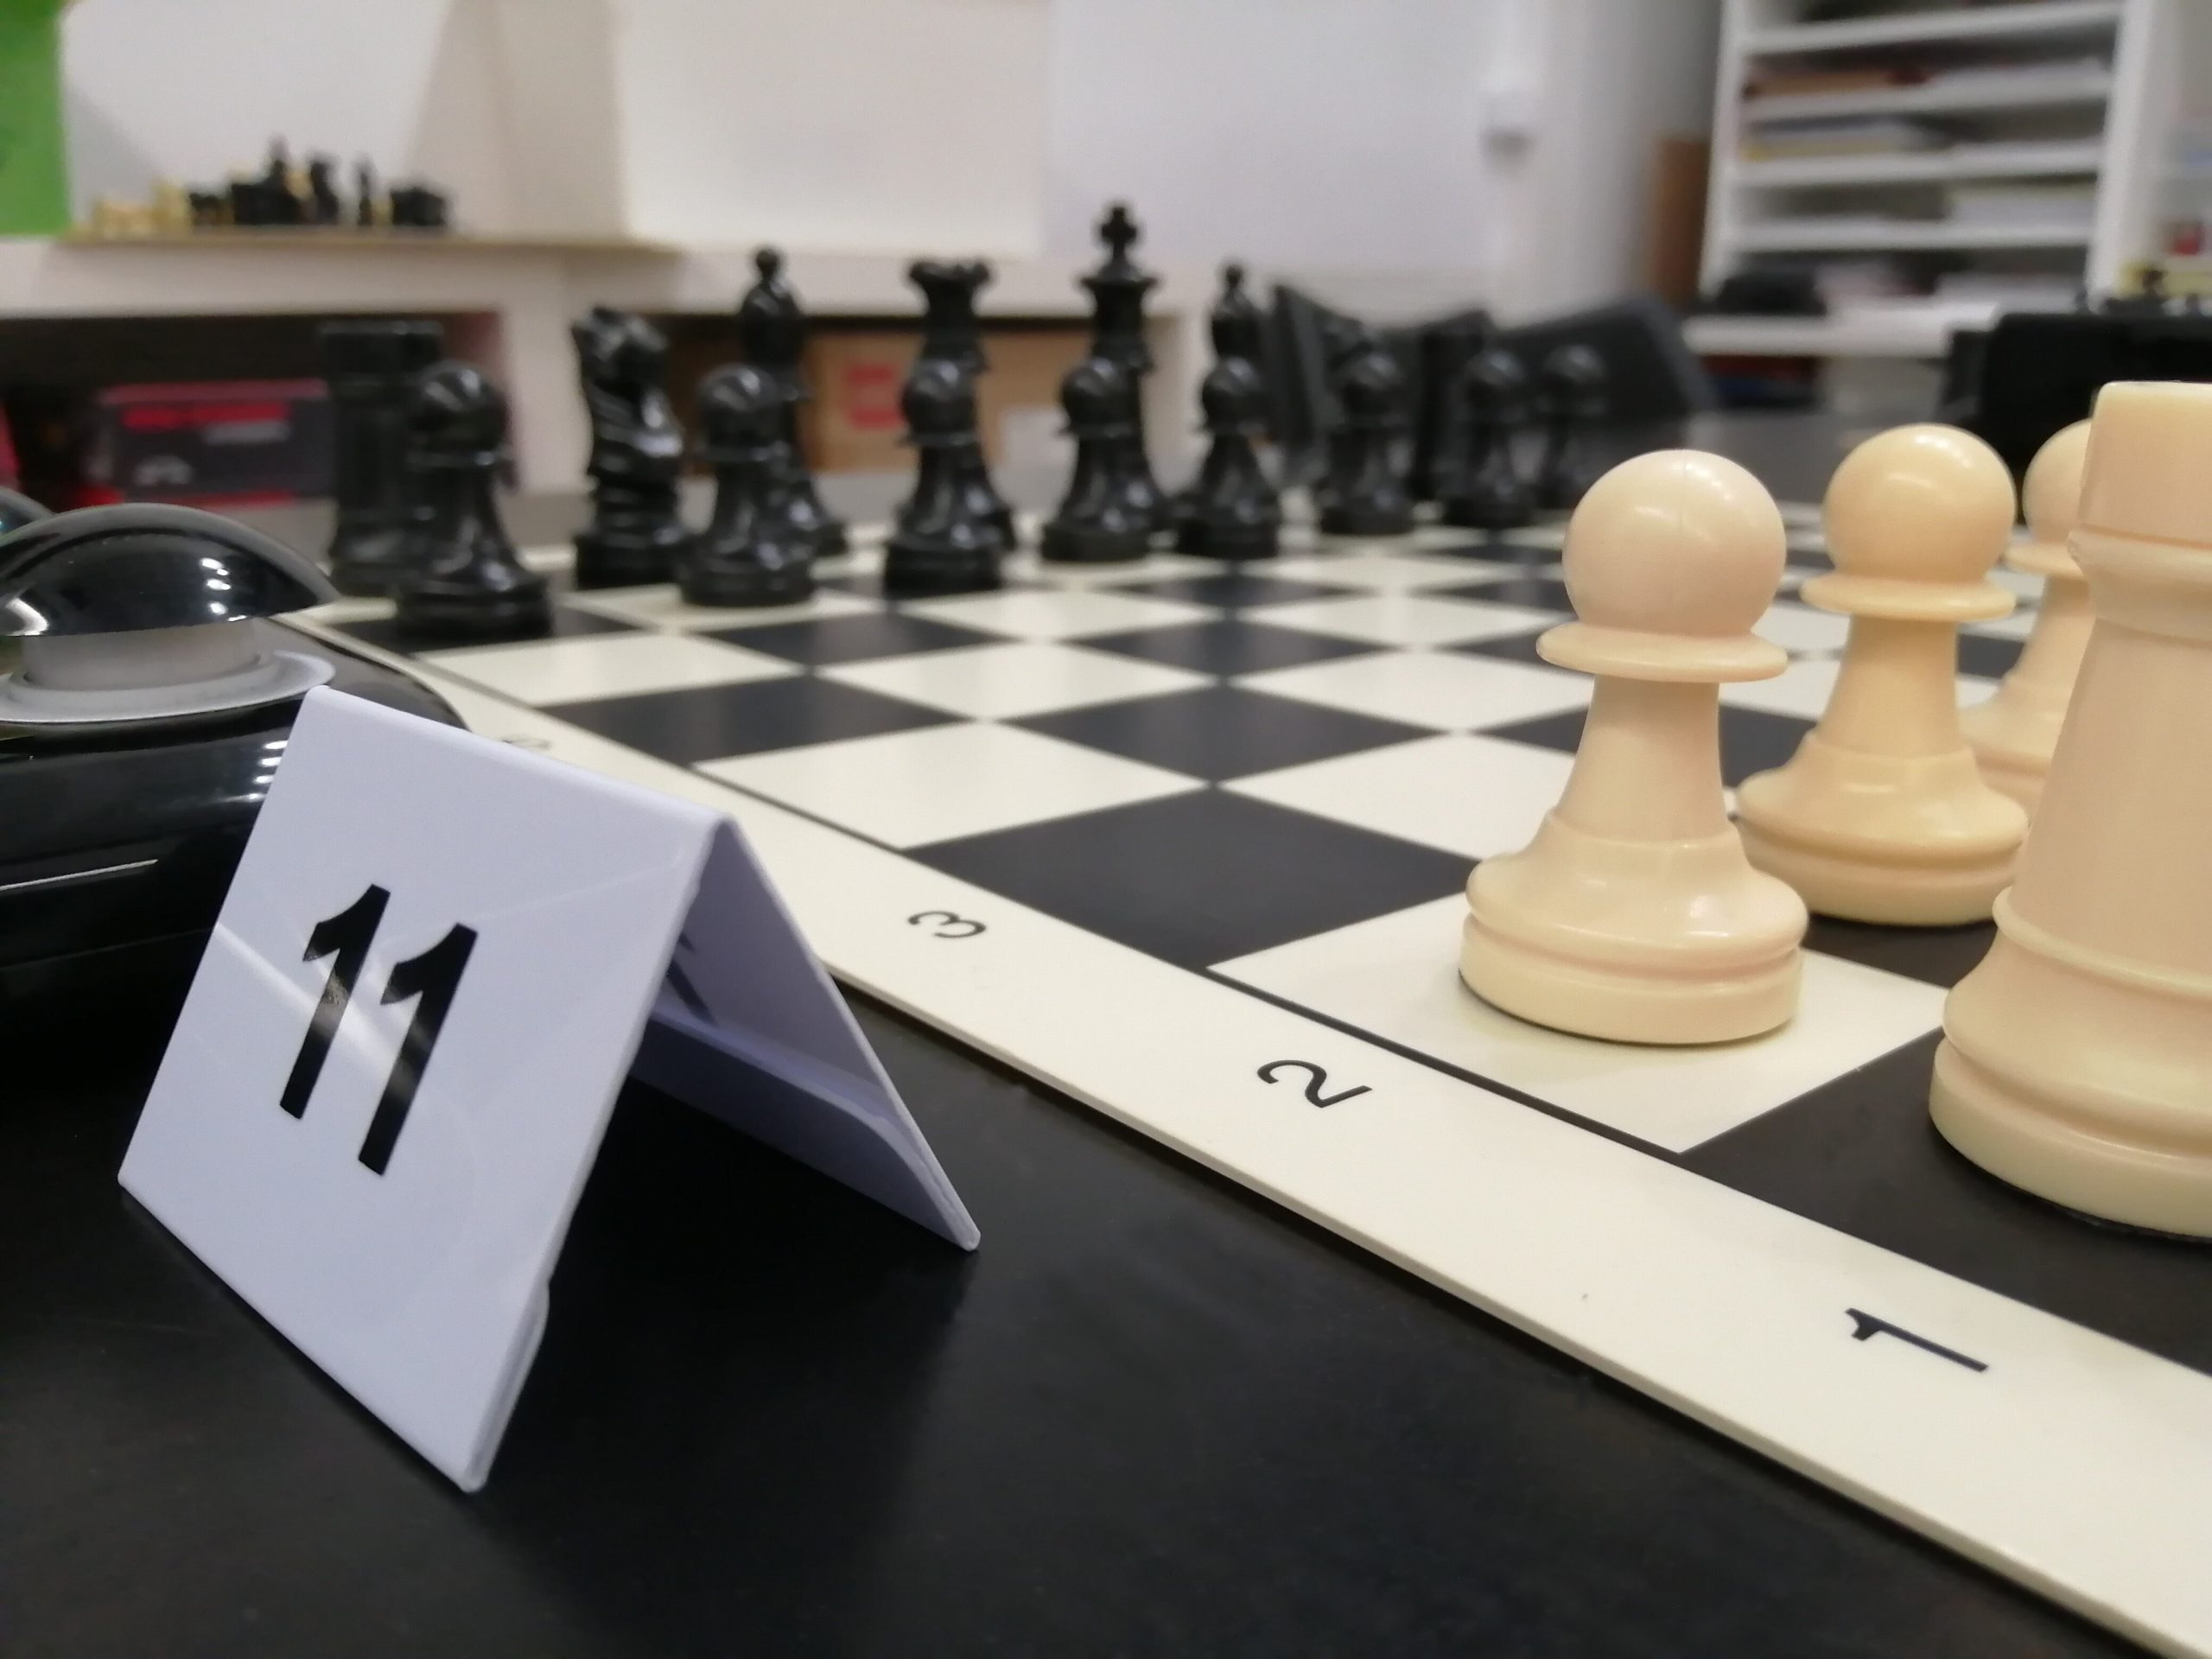 club de ajedrez blanco y negro en Madrid. Aprender ajedrez es fácil en nuestra escuela de ajedrez.